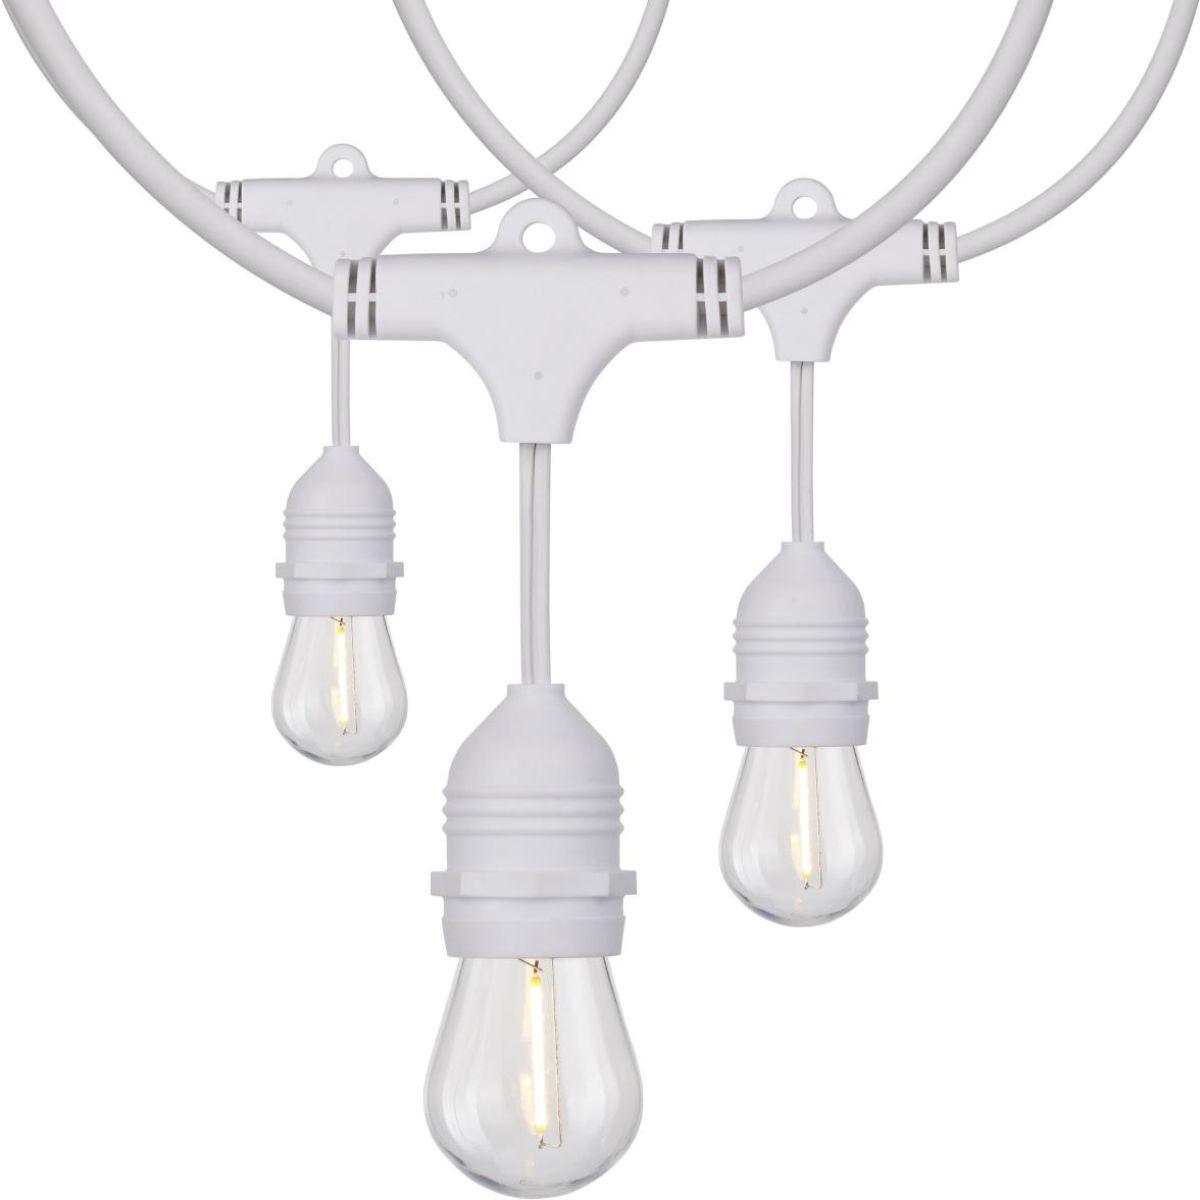 24 Feet LED String Light, 12 S14 bulbs, Warm White 2200K, 120V, Indoor/Outdoor, White Cord - Bees Lighting